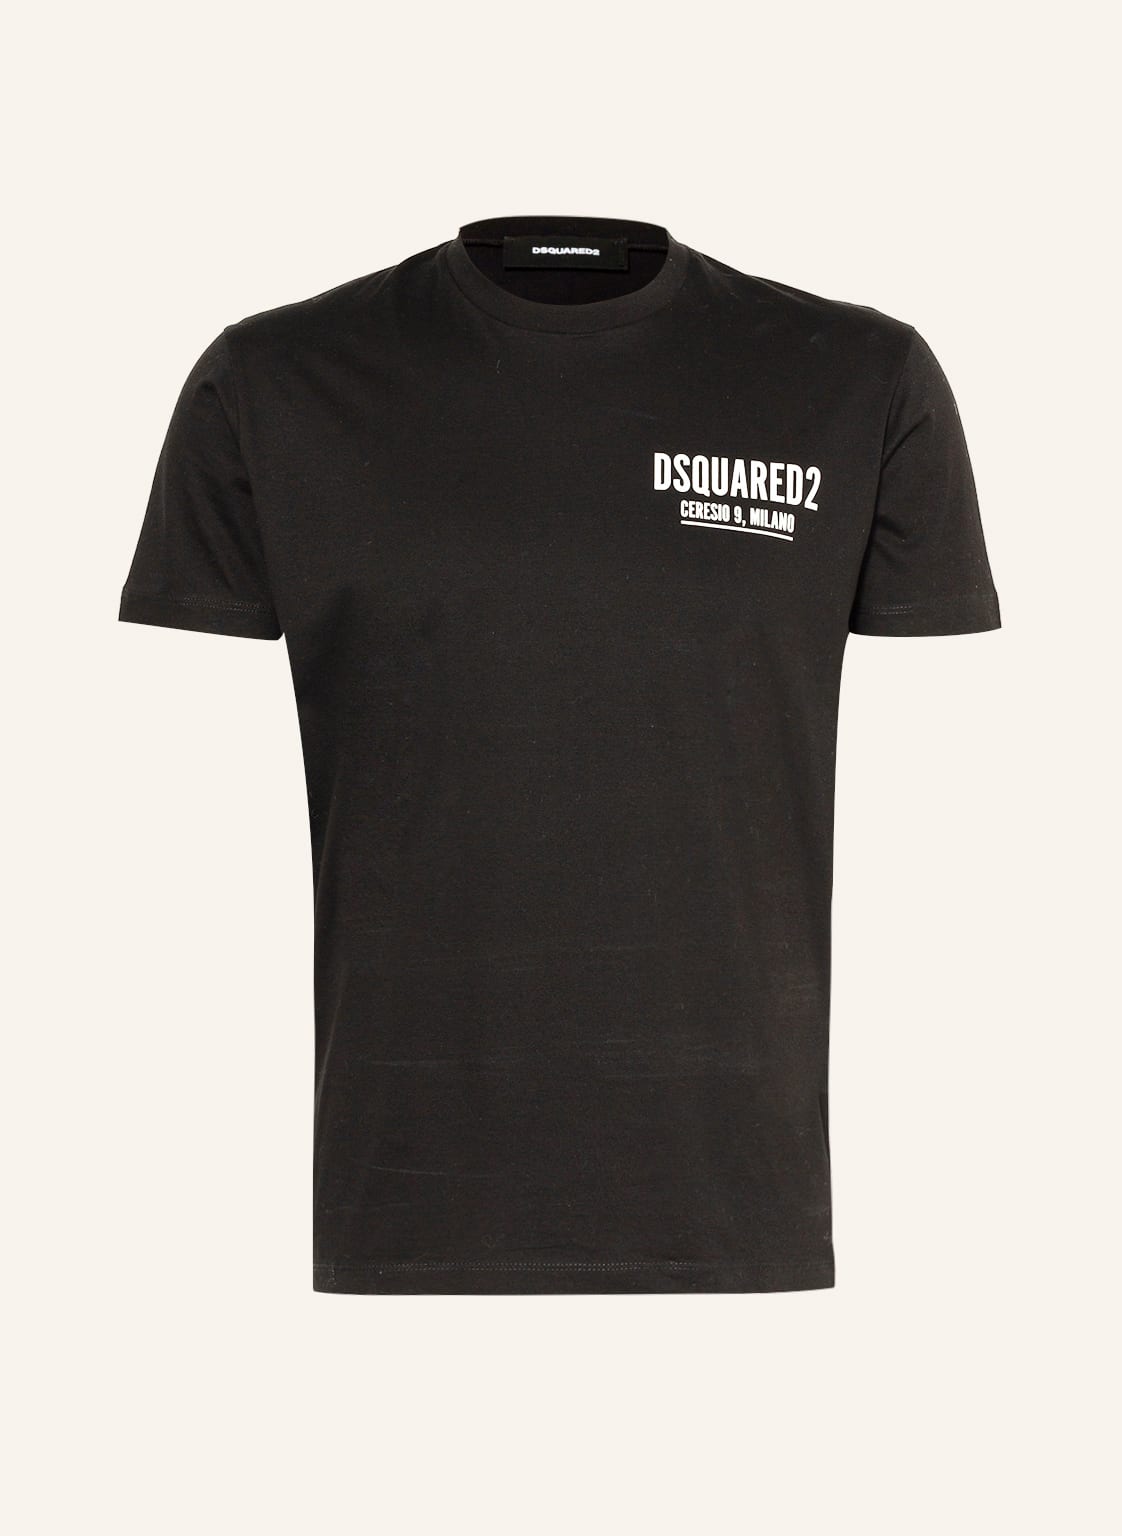 dsquared2 T-Shirt Ceresio 9 schwarz von Dsquared2